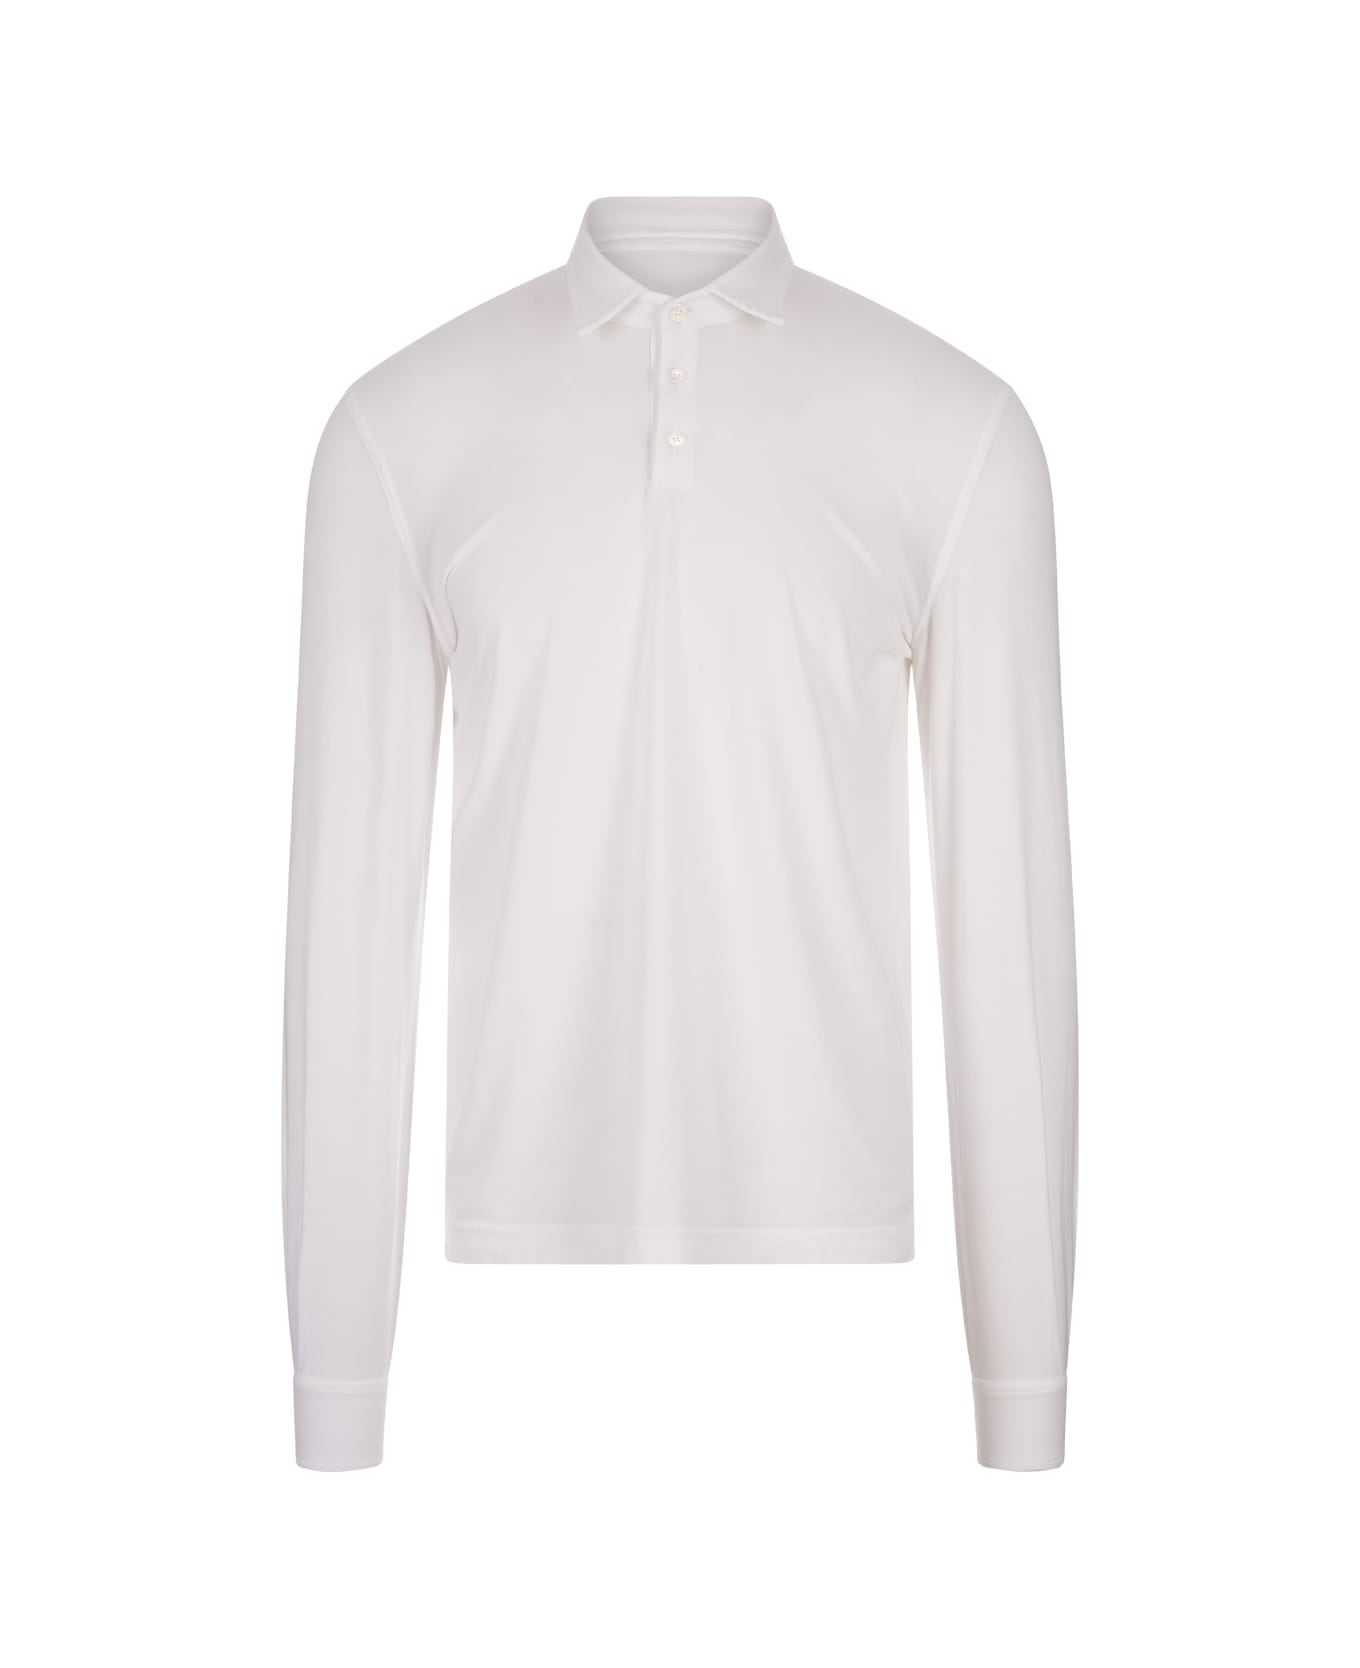 Fedeli White Long Sleeve Polo Shirt - White ポロシャツ